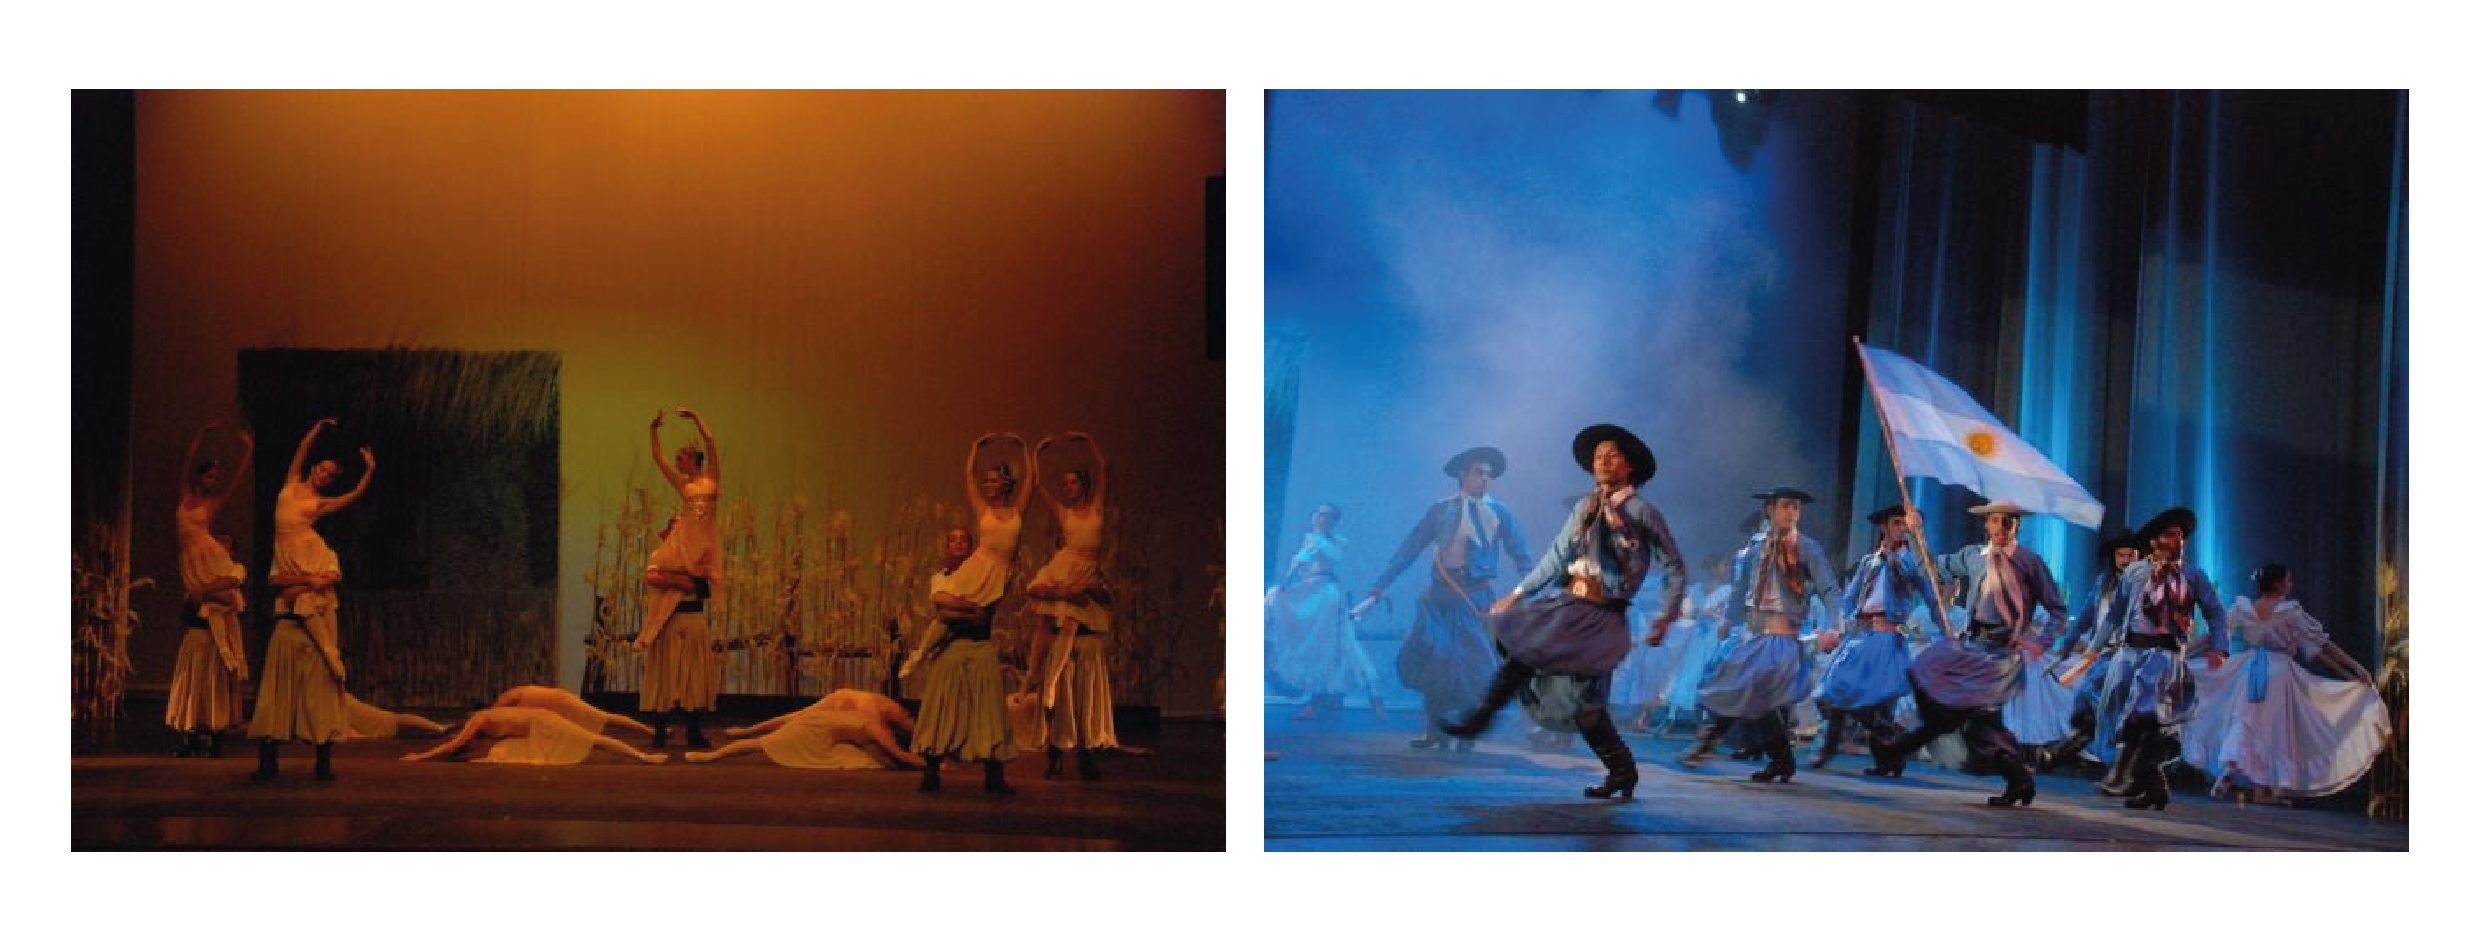 Imágenes de la función del Teatro Independencia de
Mendoza cedidas por la fotógrafa Silvana Fusfari. «Peones de la hacienda» (izquierda) y «Malambo final» (derecha)